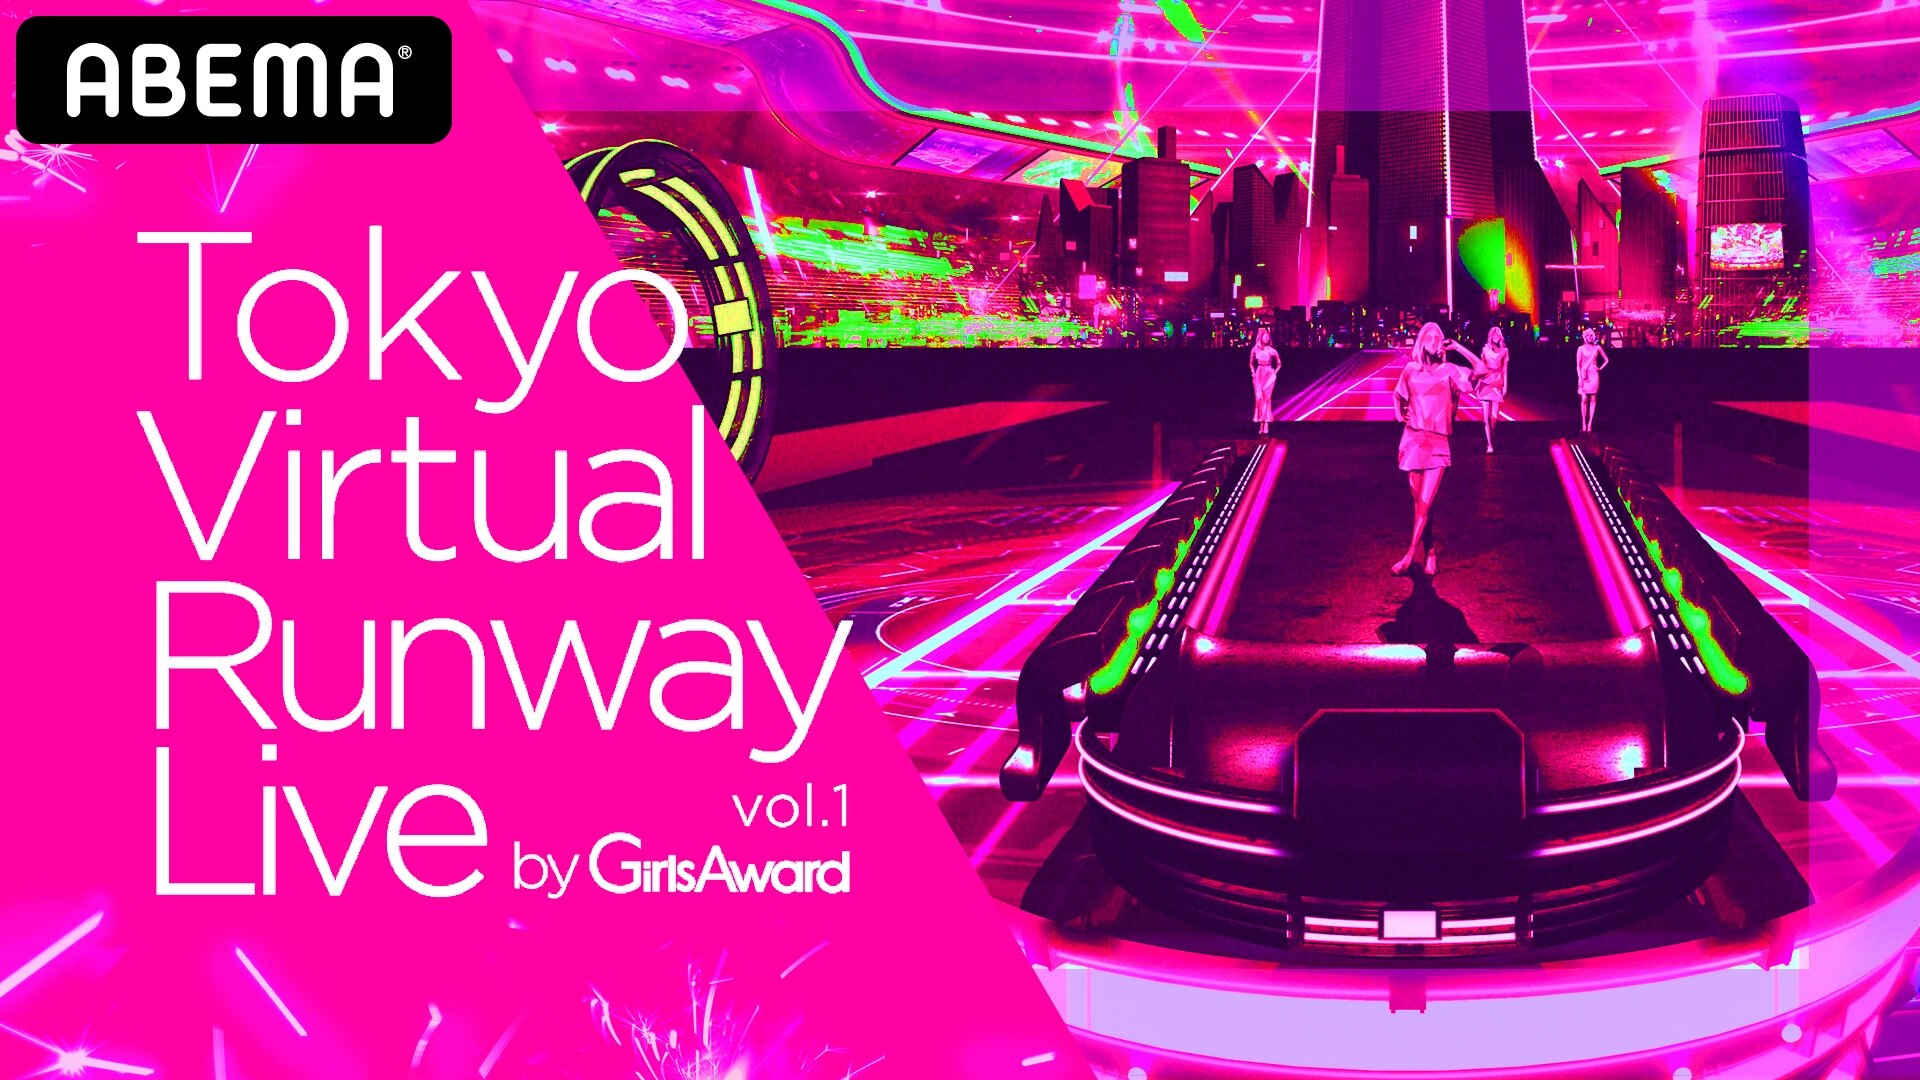 News 6月27日 土 に開催される Tokyo Virtual Runway Live By Girlsaward に楓と重留真波が出演決定 E Girls